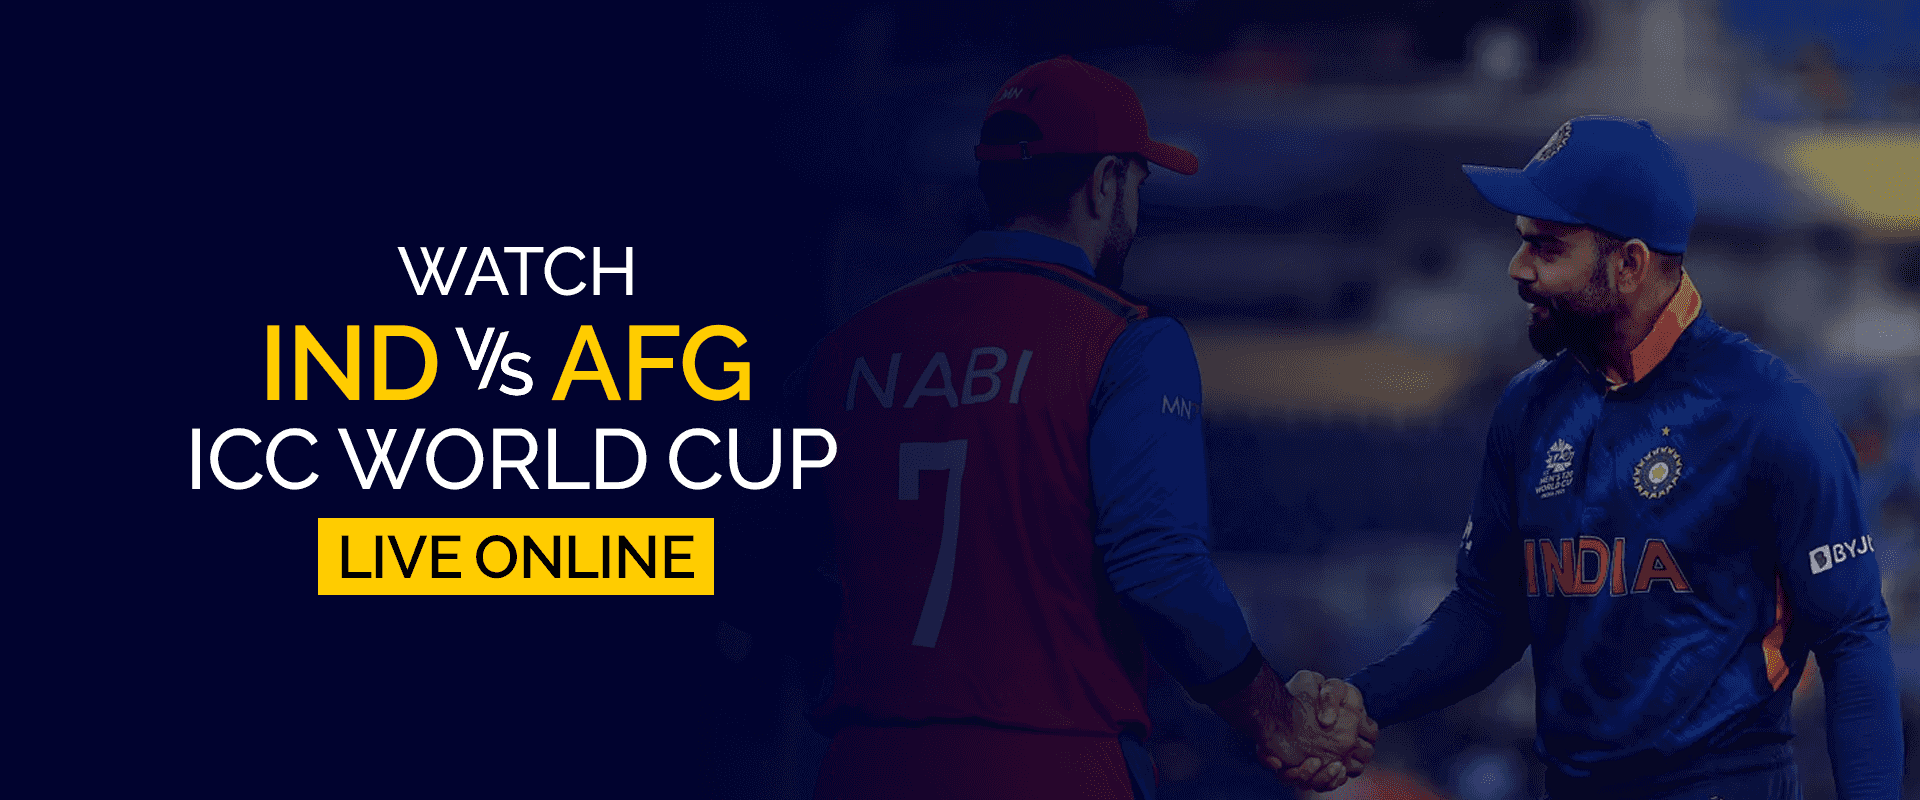 شاهد كأس العالم IND vs AFG ICC مباشرة عبر الإنترنت